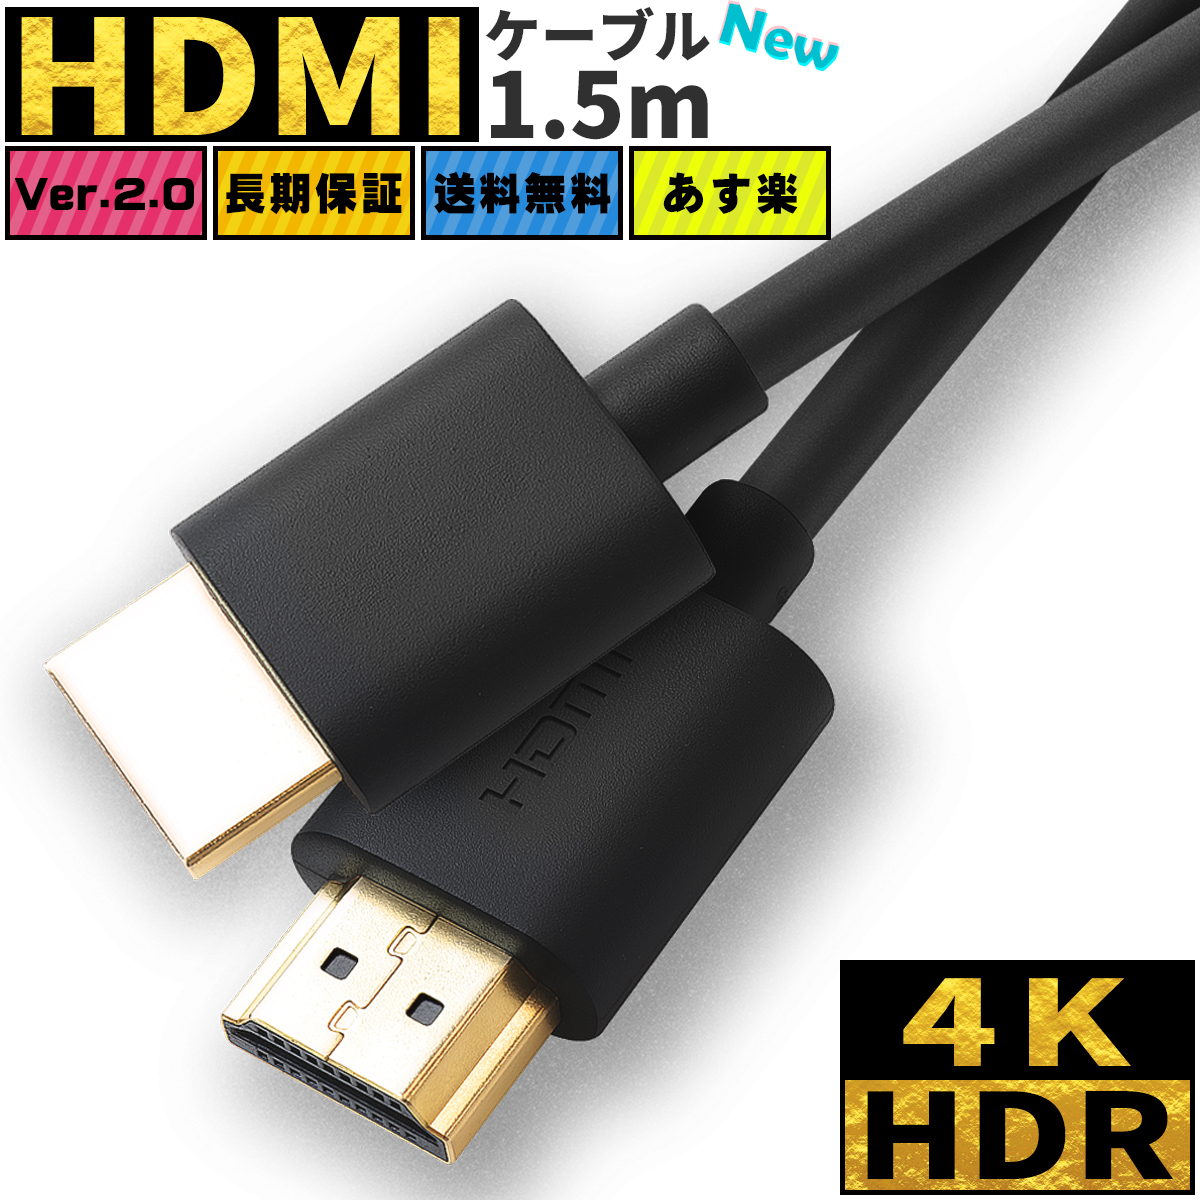 送料無料 HDMI ハイスピード HDMIケーブル DVDプレーヤー HDDレコーダー ケーブル 1.5m Ver.2.0 4K 8K 60Hz 3D 新作アイテム毎日更新 ニンテンドー スイッチ DM便 高品質 イーサネット 細線 買取 スリム テレビ tv ポイント消化 業務用 switch